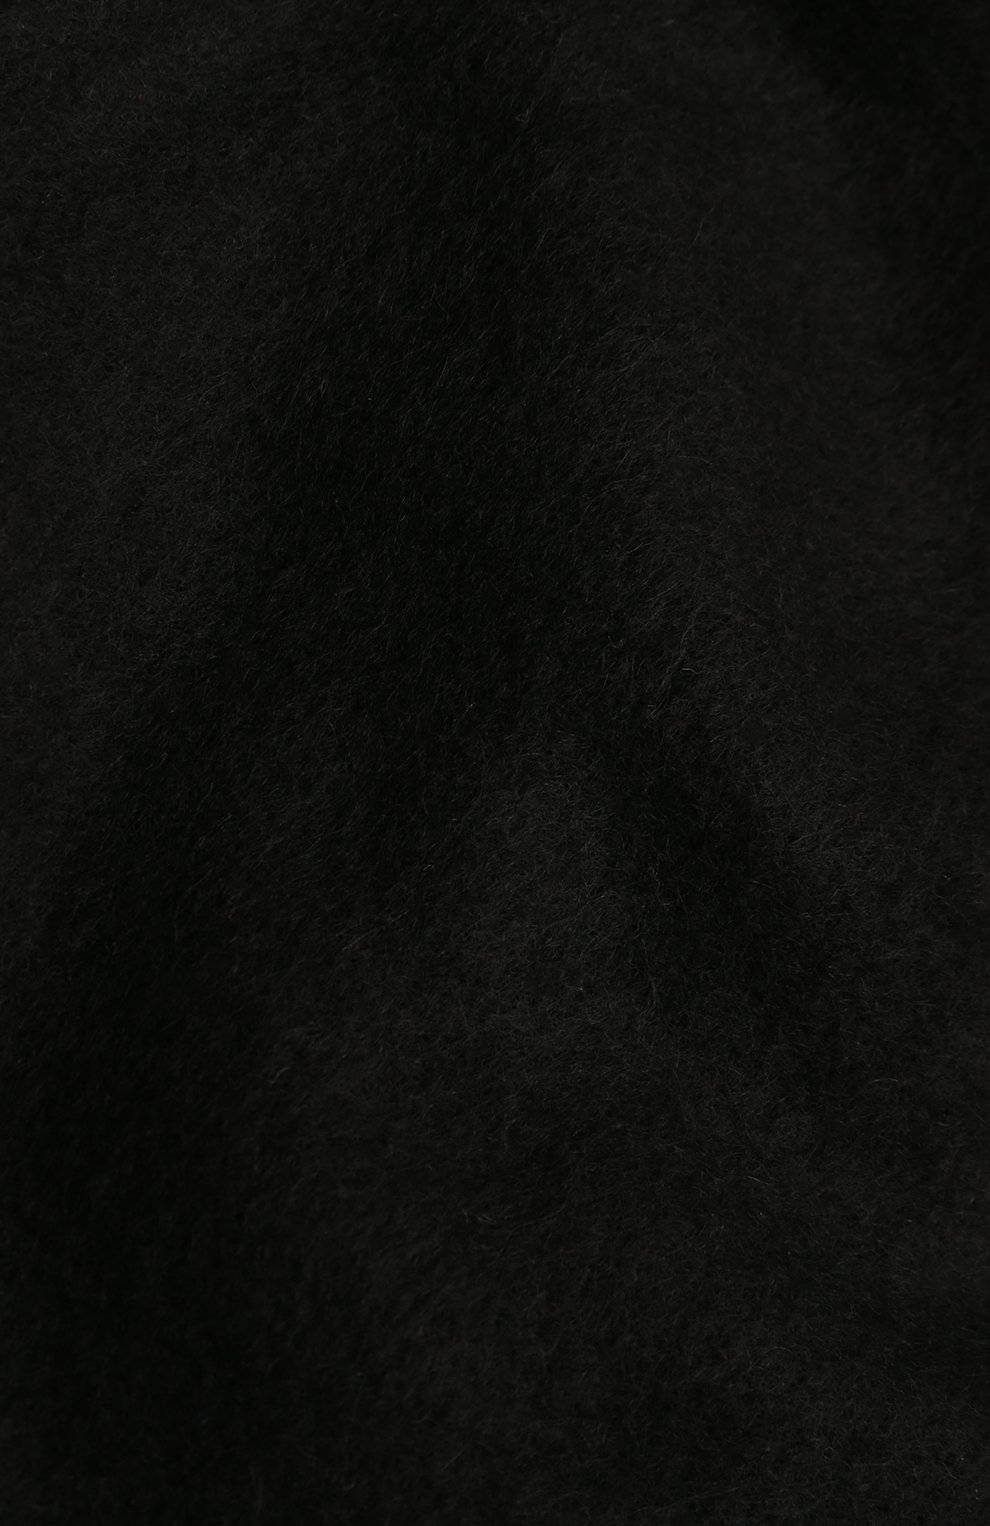 Женская шаль из кашемира и шерсти GIORGIO ARMANI черного цвета, арт. 795207/2F110 | Фото 4 (Материал: Текстиль, Кашемир, Шерсть)